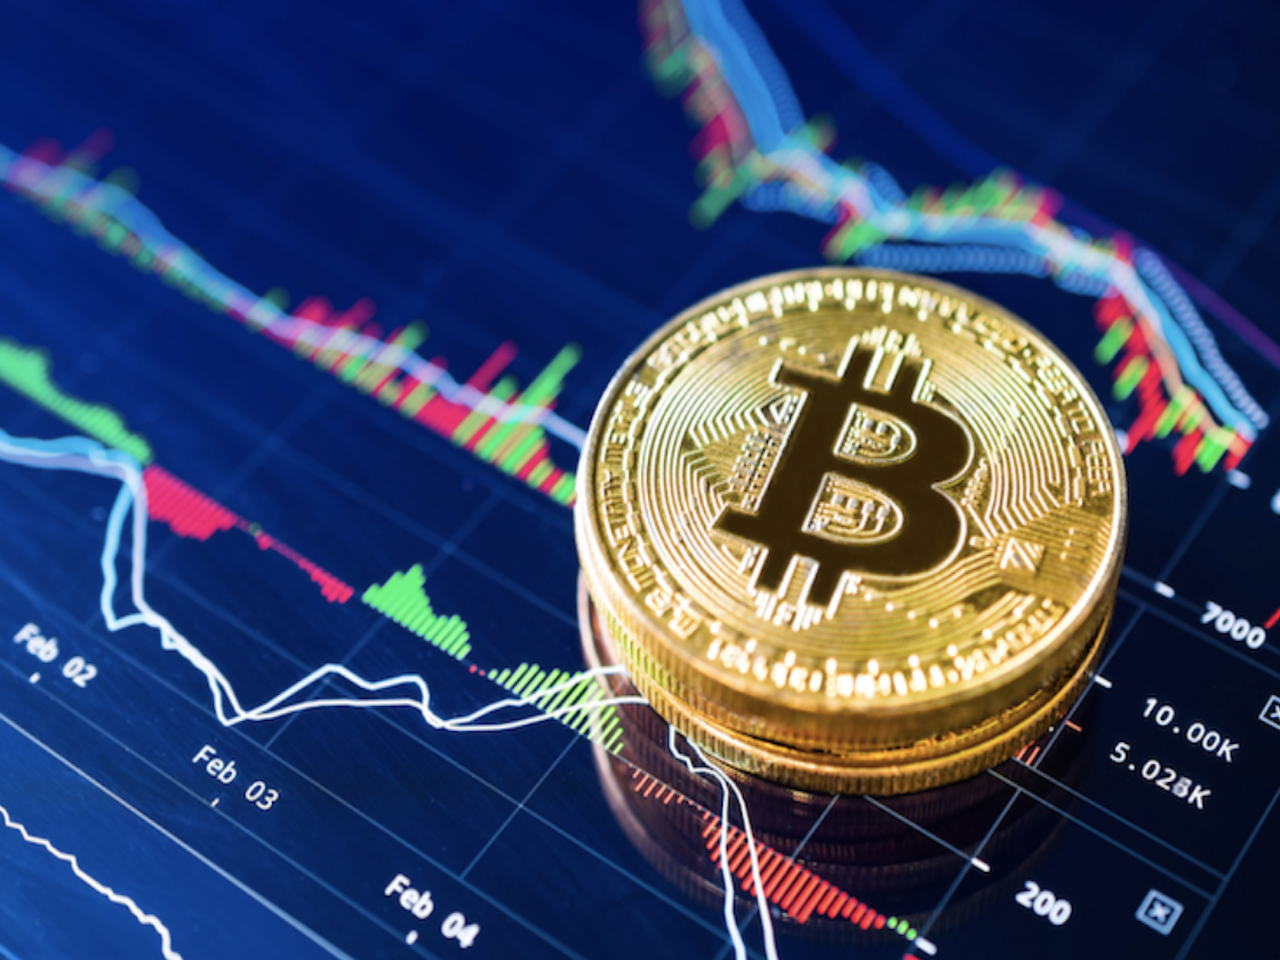 300 euro in bitcoin investieren können wir über zerodha in kryptowährung investieren?